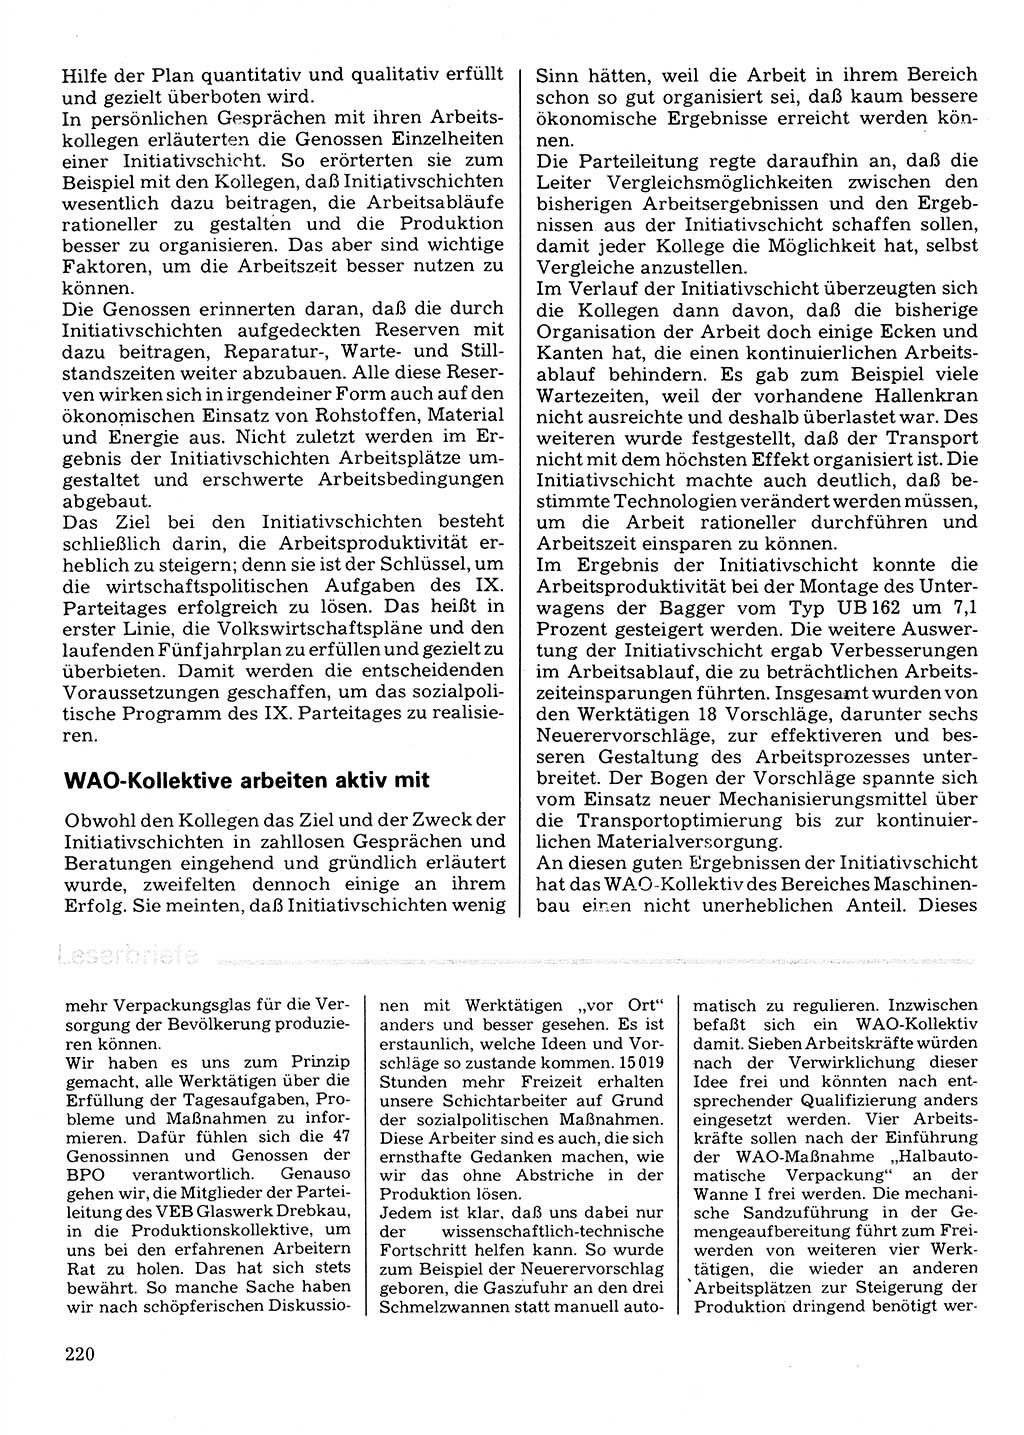 Neuer Weg (NW), Organ des Zentralkomitees (ZK) der SED (Sozialistische Einheitspartei Deutschlands) für Fragen des Parteilebens, 32. Jahrgang [Deutsche Demokratische Republik (DDR)] 1977, Seite 220 (NW ZK SED DDR 1977, S. 220)